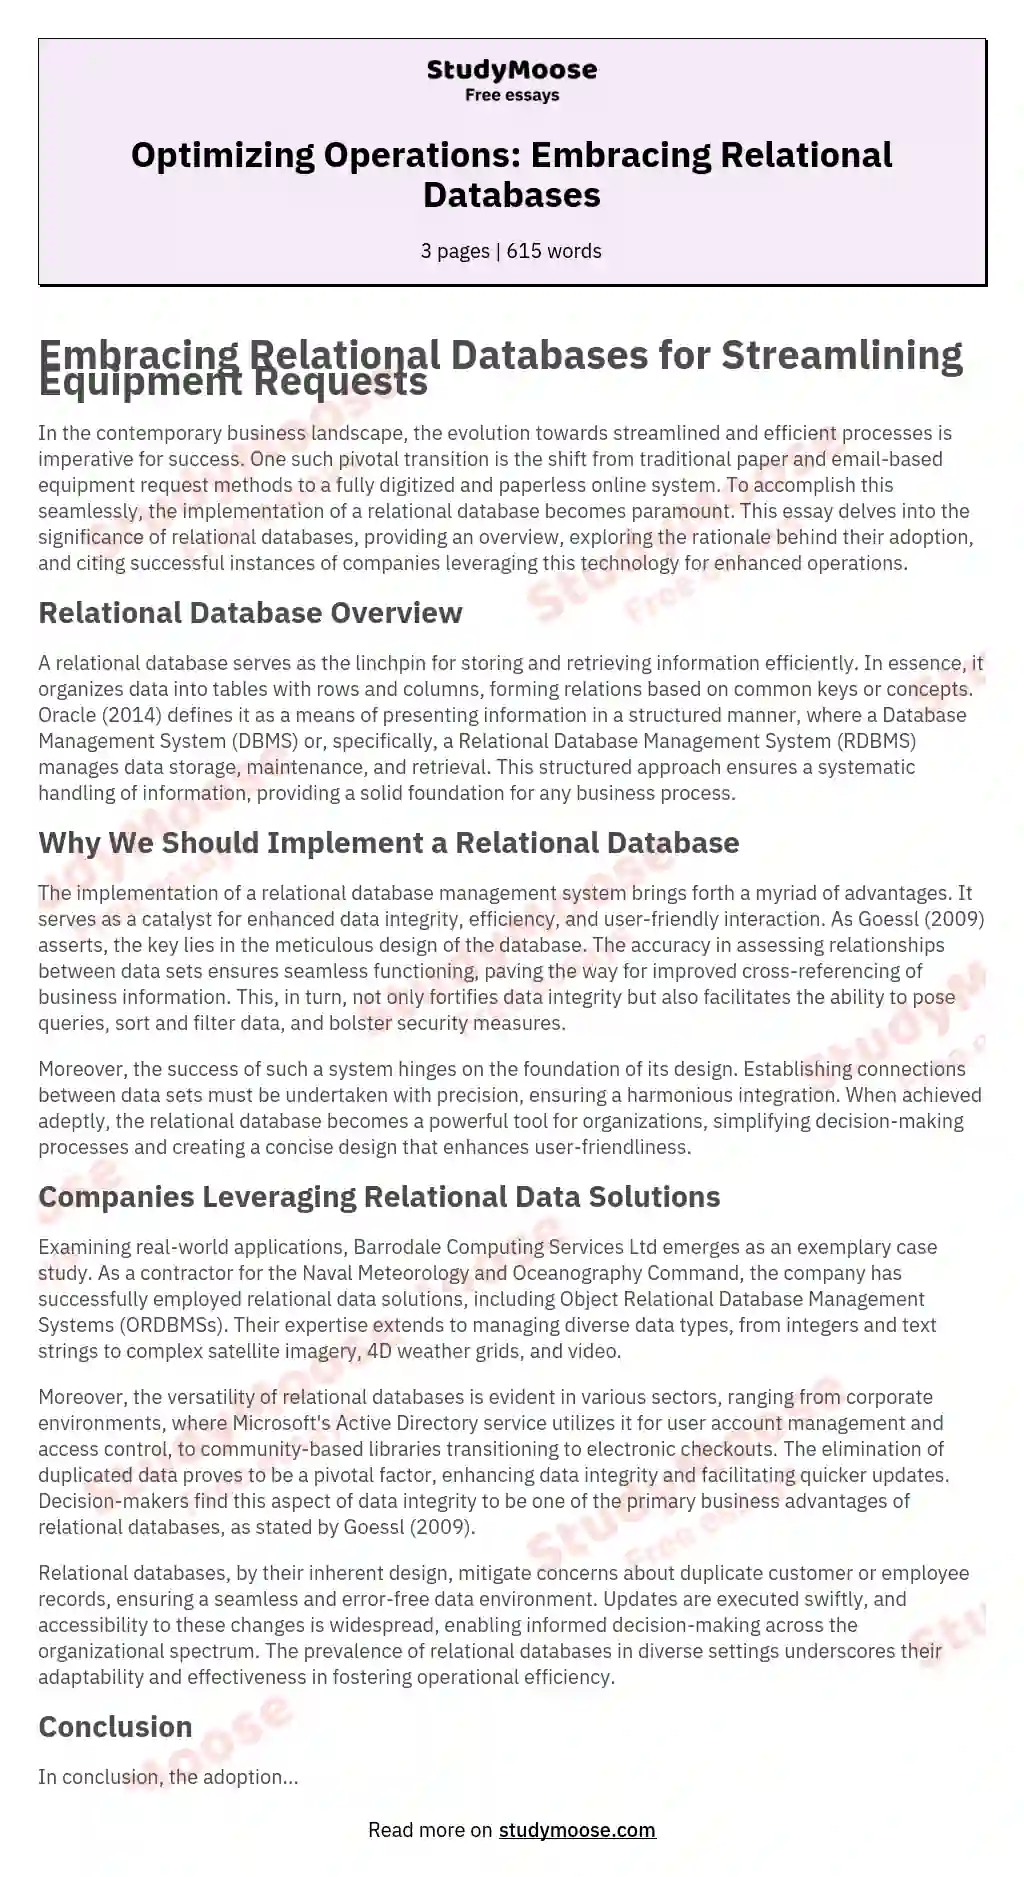 Optimizing Operations: Embracing Relational Databases essay